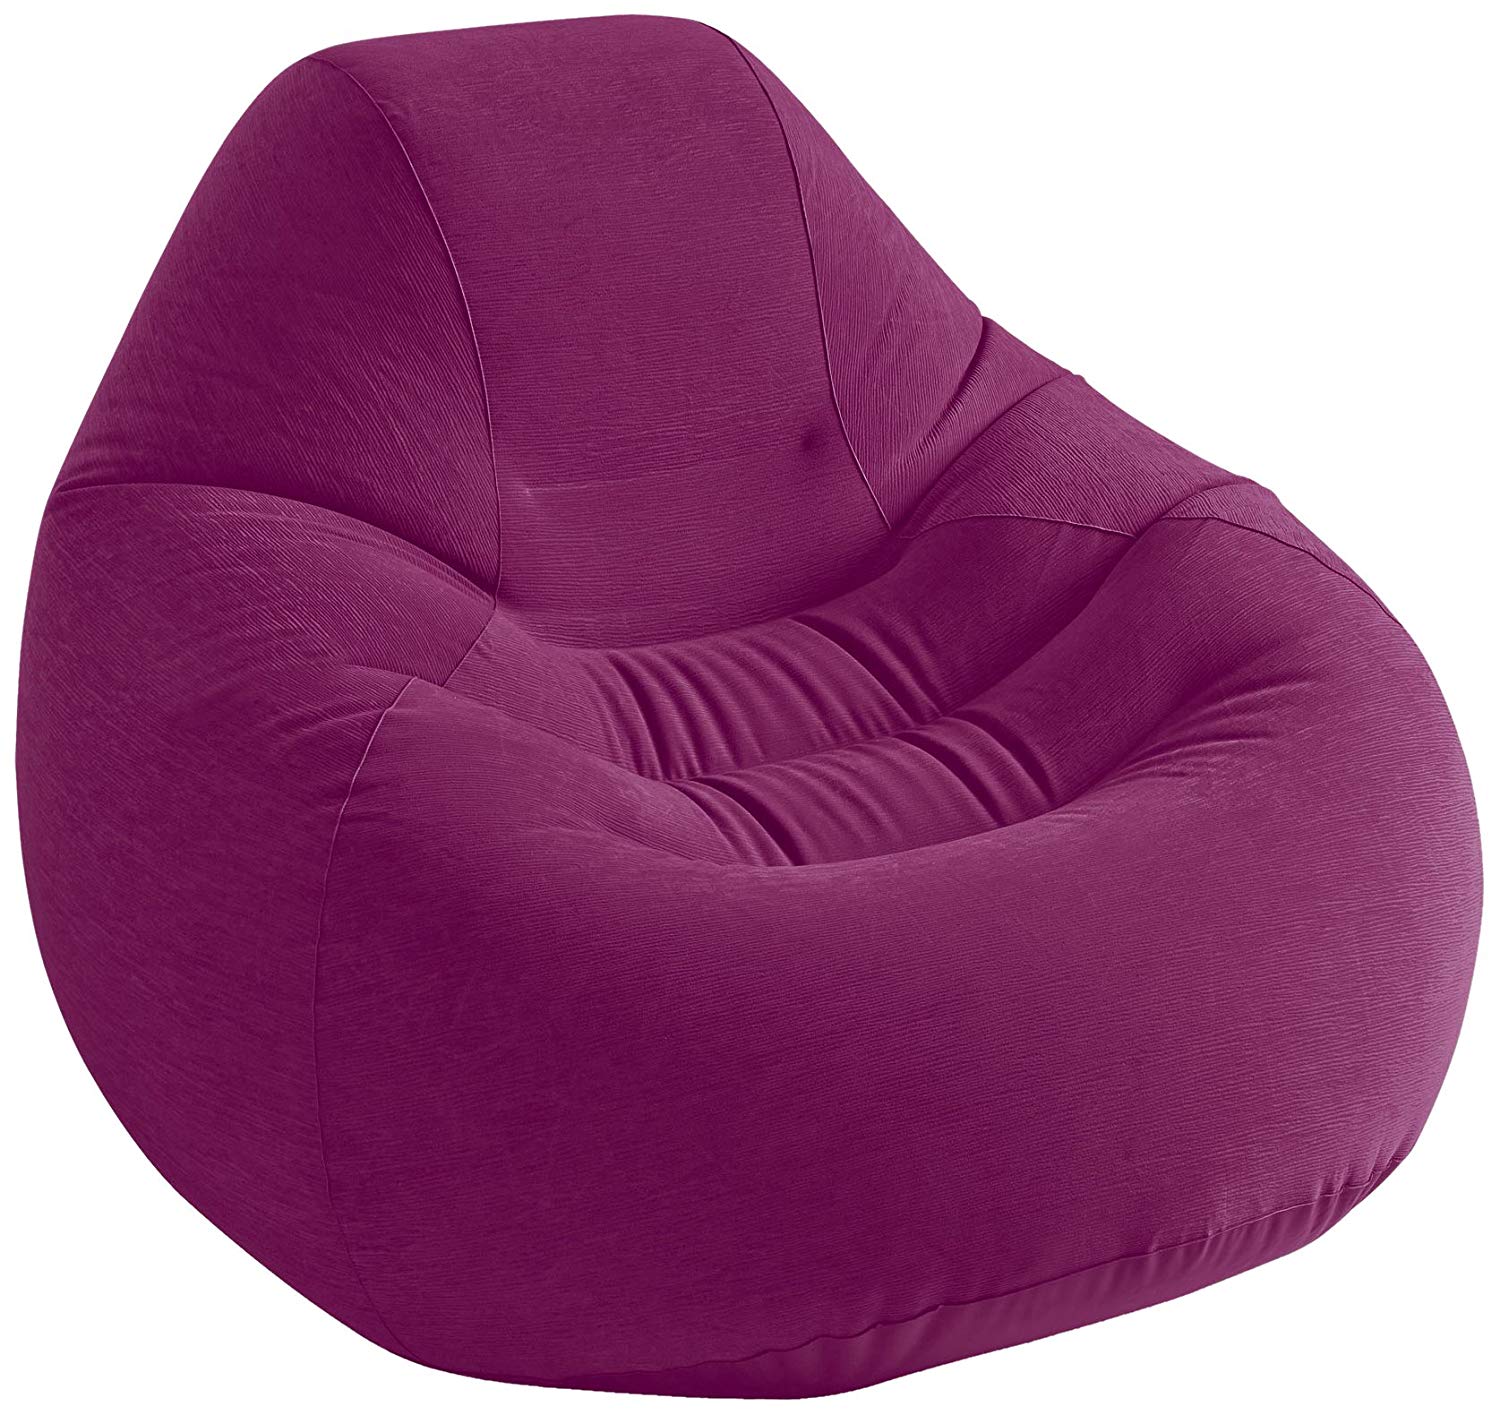 beanless-bean-bag-chair-inflatable